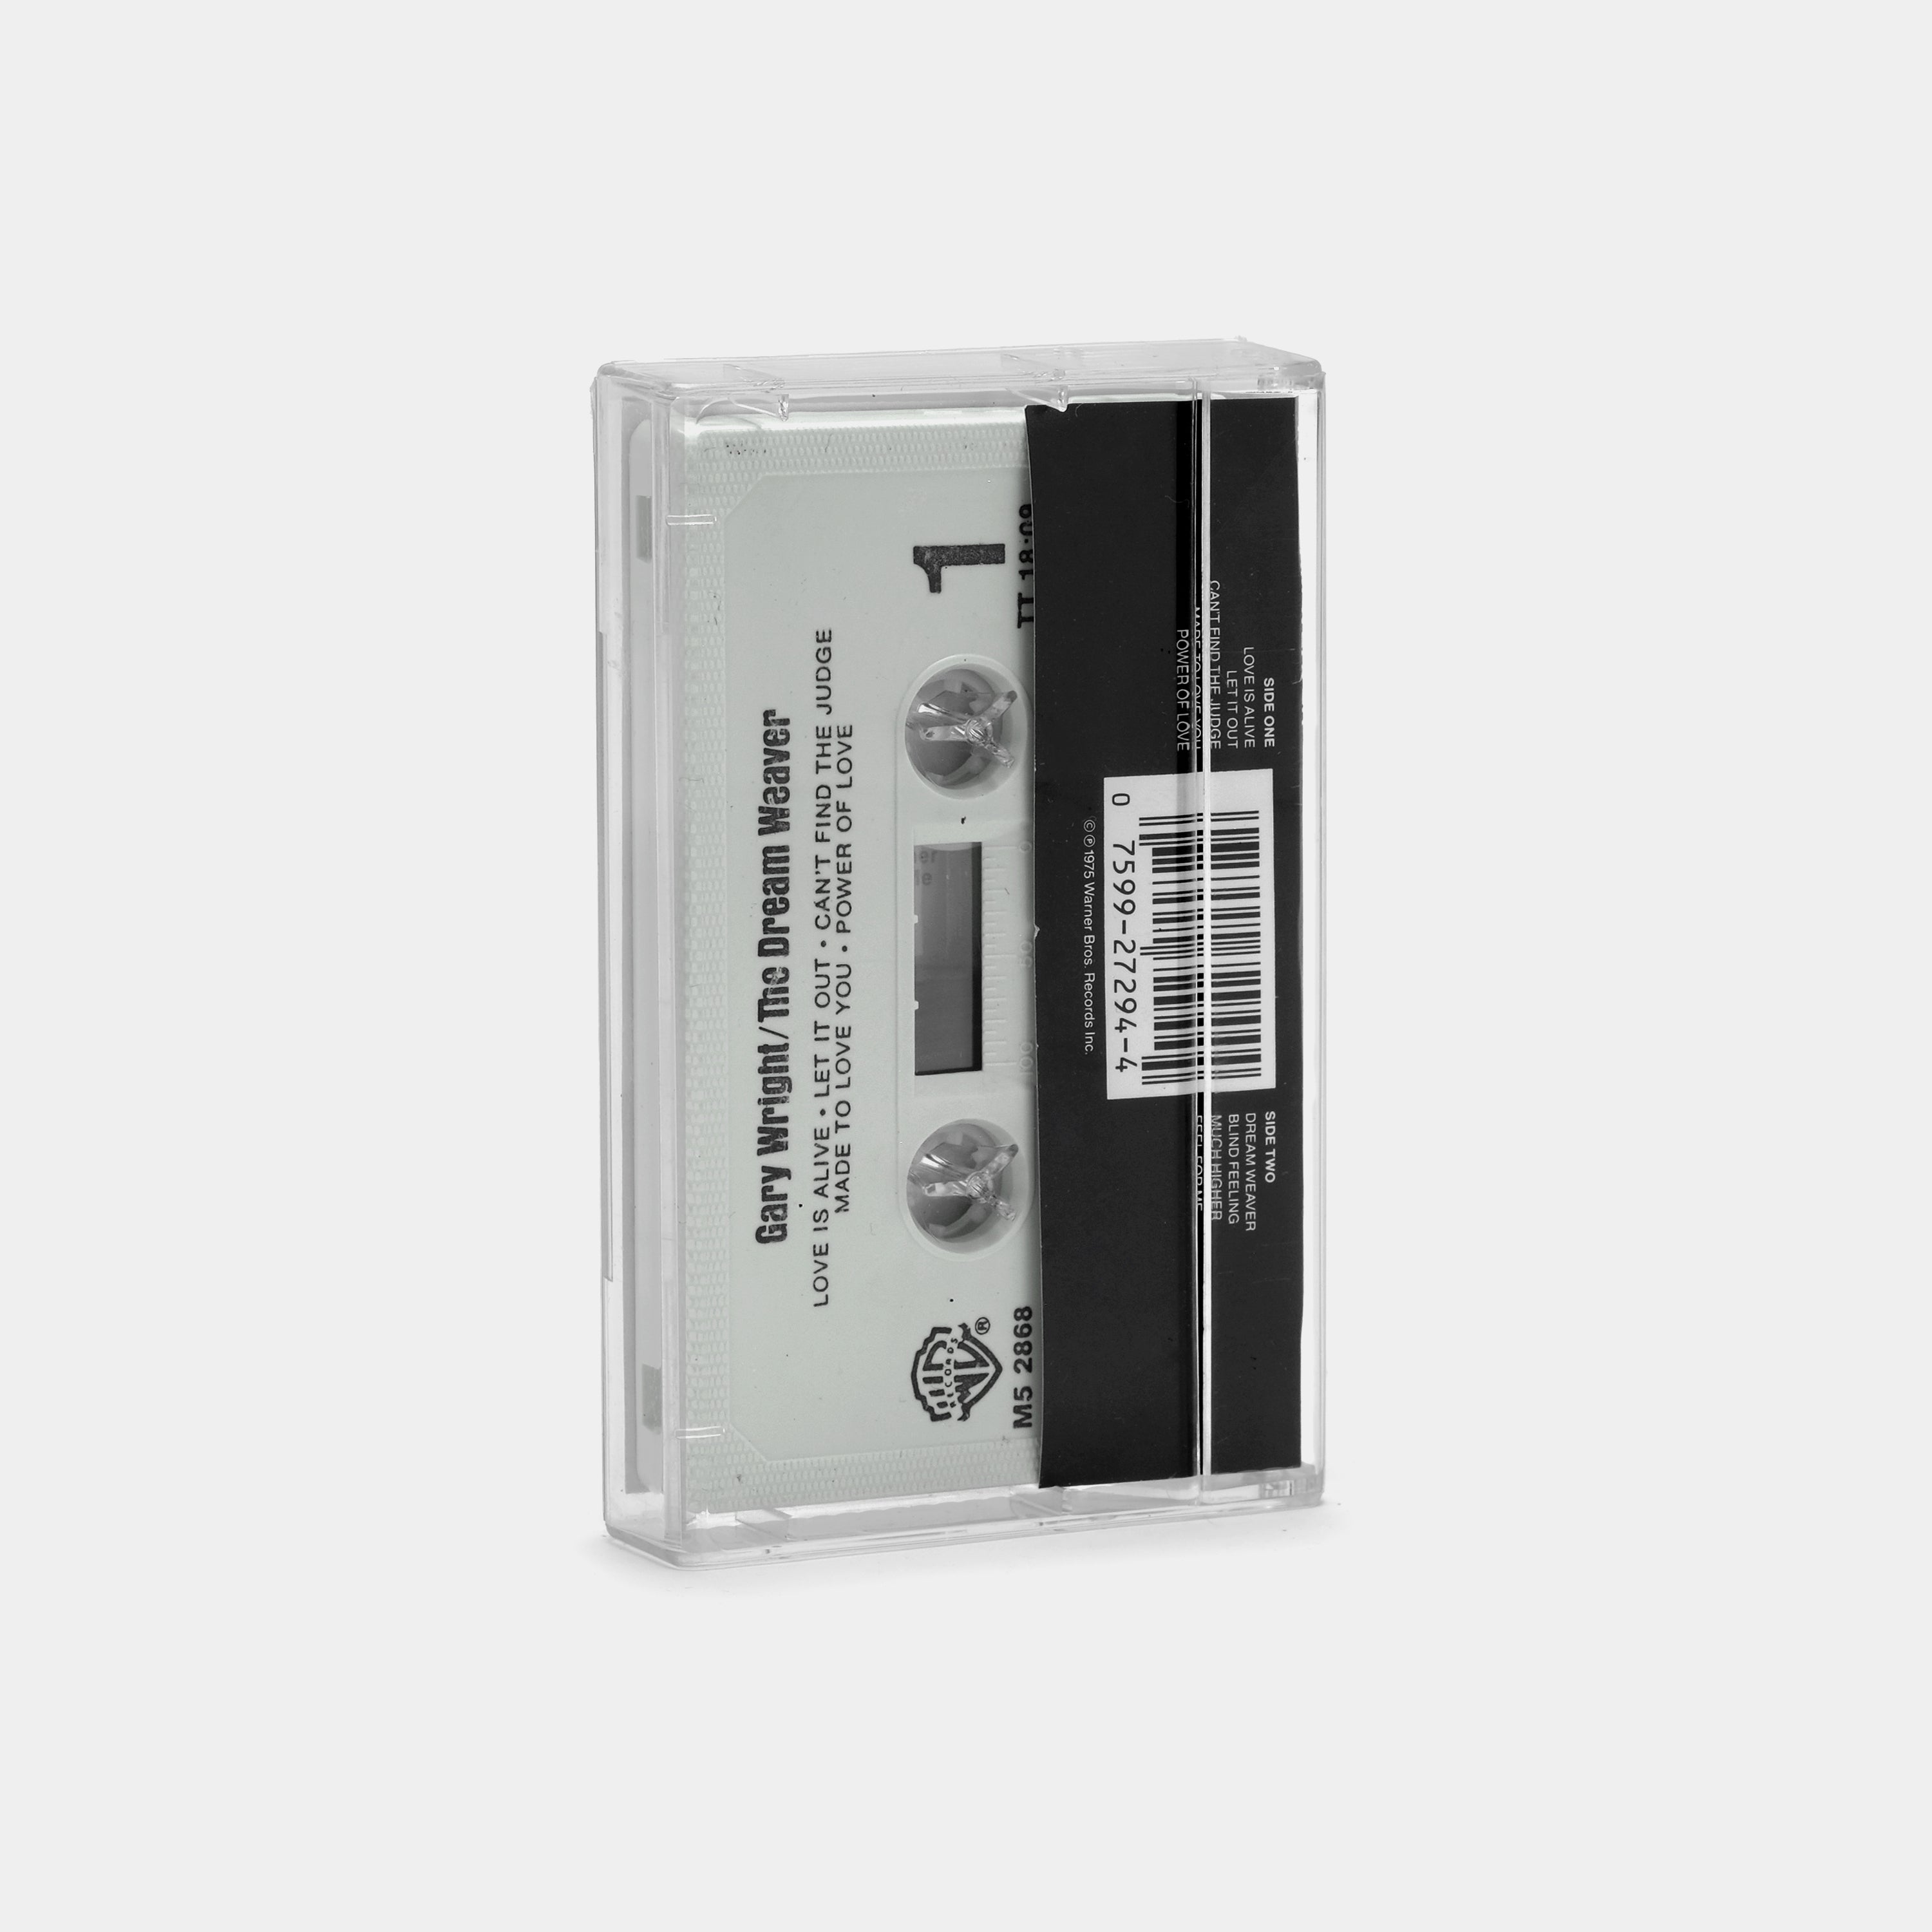 Gary Wright - The Dream Weaver Cassette Tape